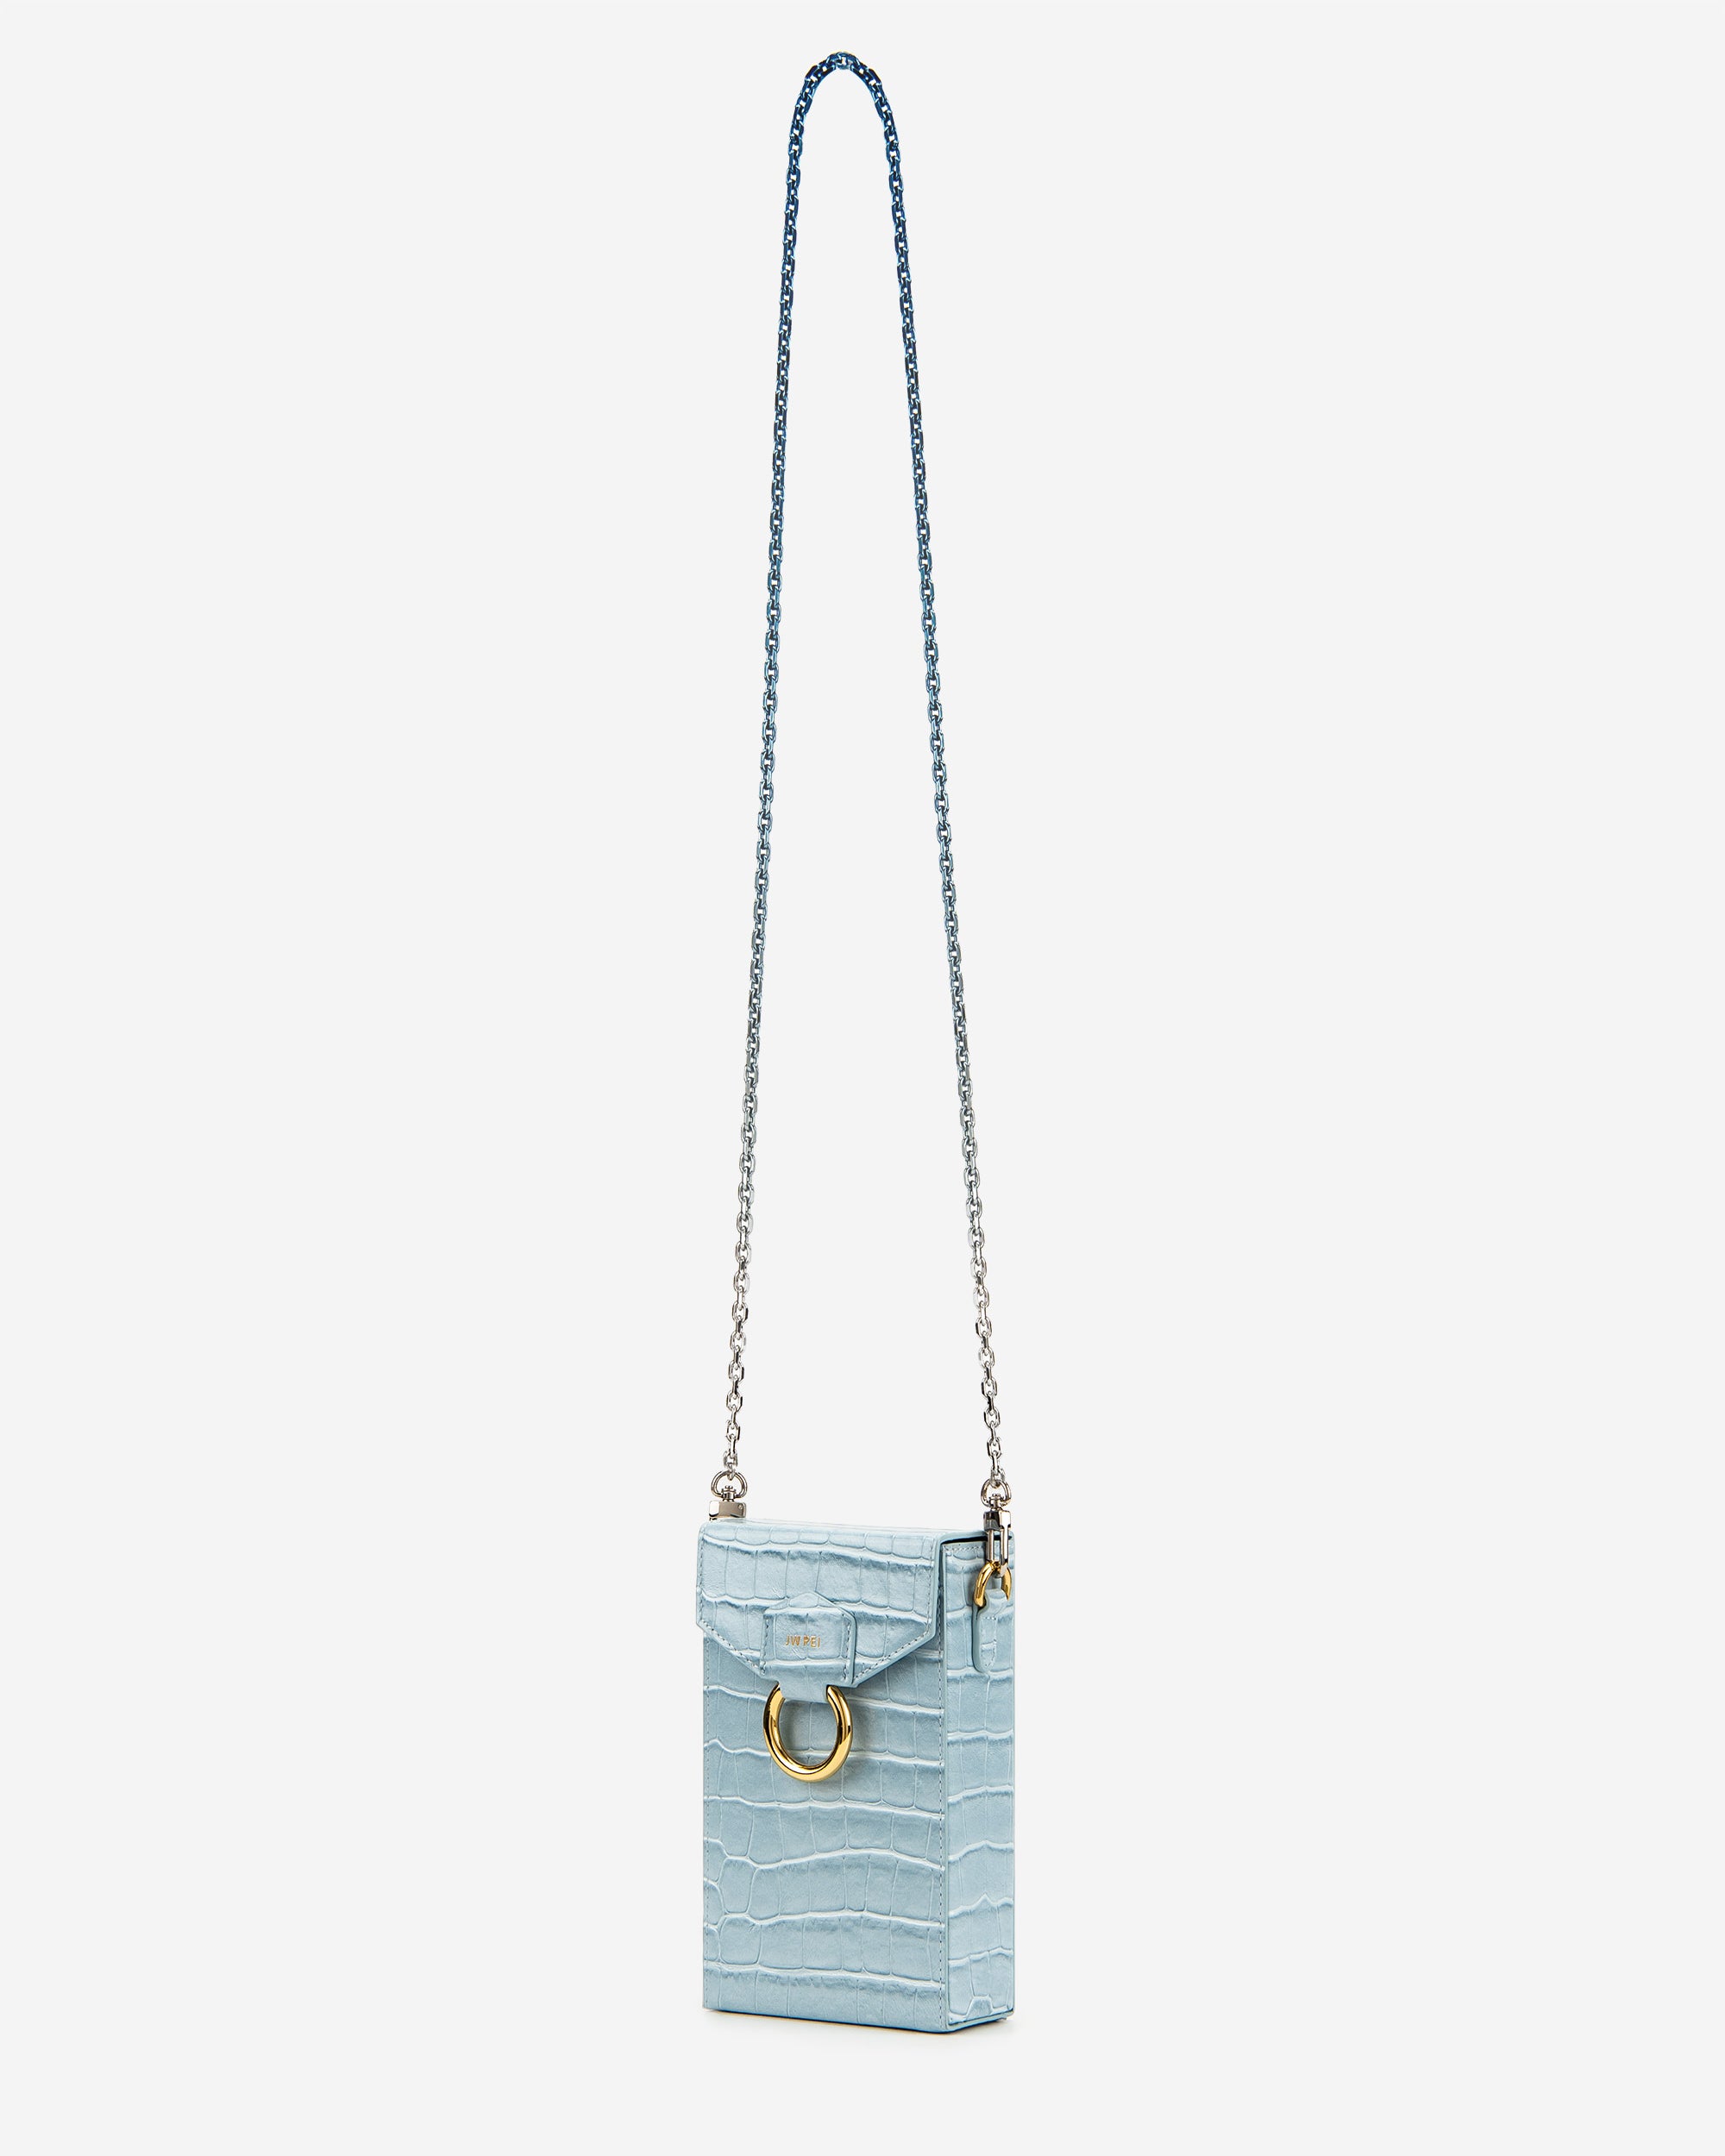 lola 체인 핸드폰 가방 - 아이스 블루 악어 무늬